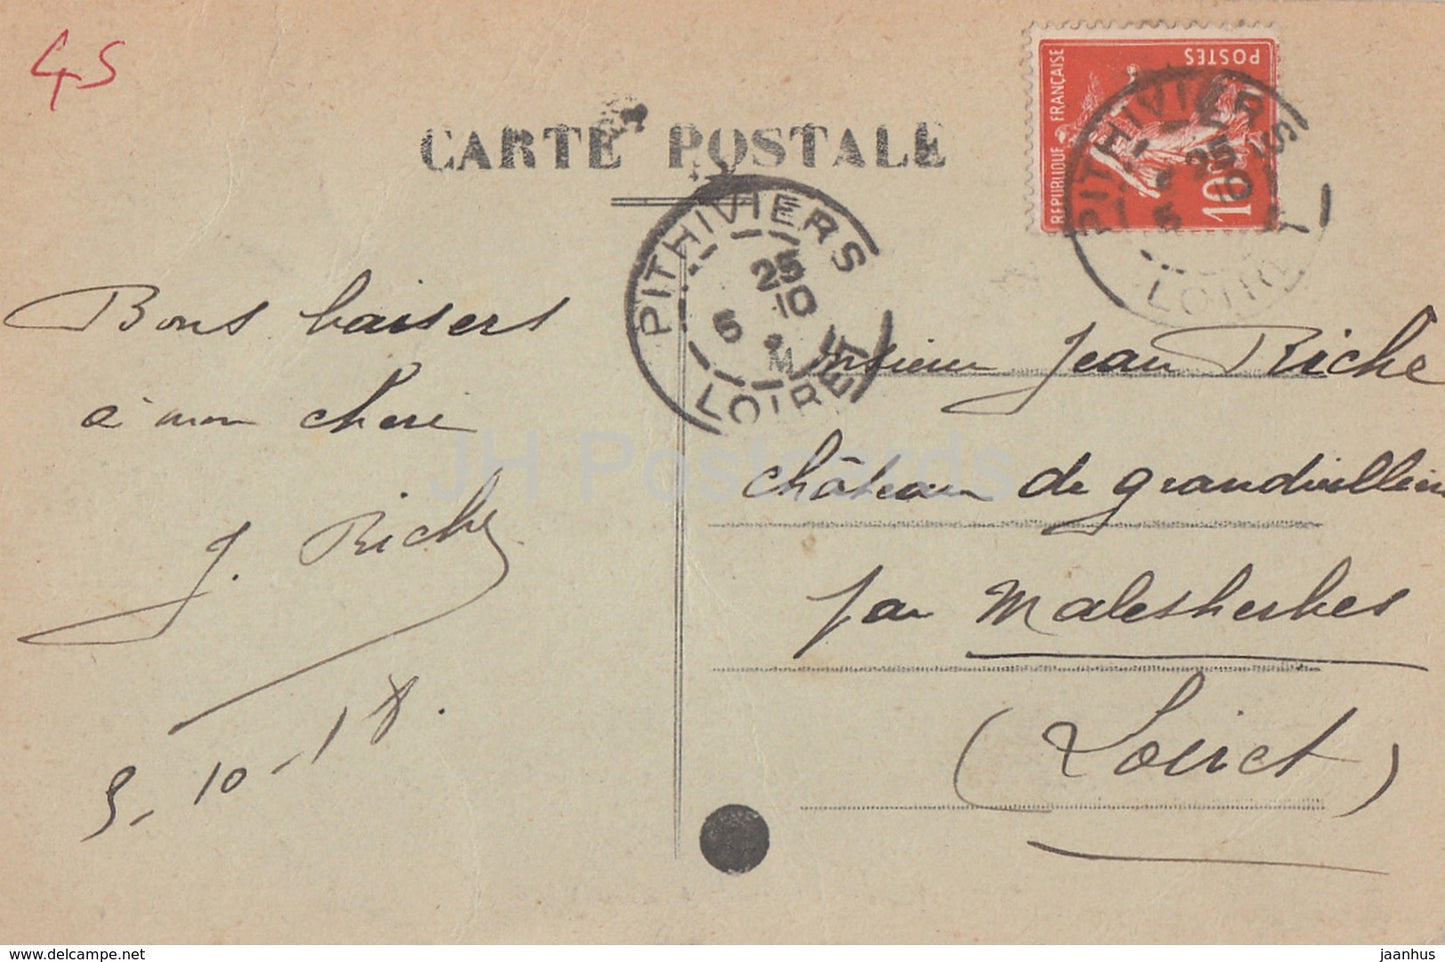 Pithiviers - Chateau de St Pierre A la Groue - Schloss - alte Postkarte - 1918 - Frankreich - gebraucht